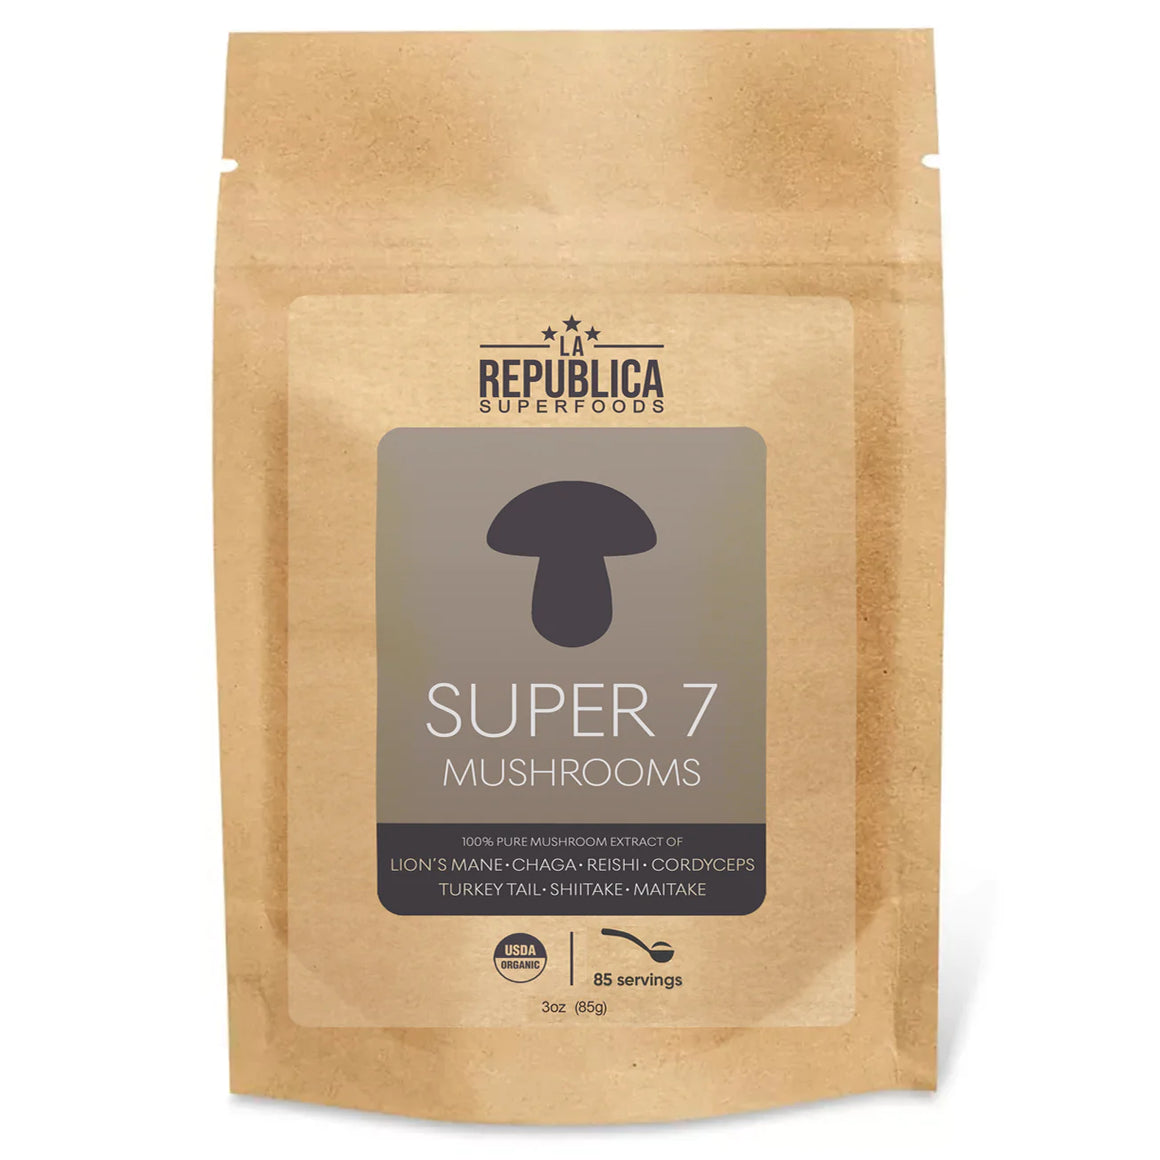 Super 7 Mushroom Extract Powder - La Republica